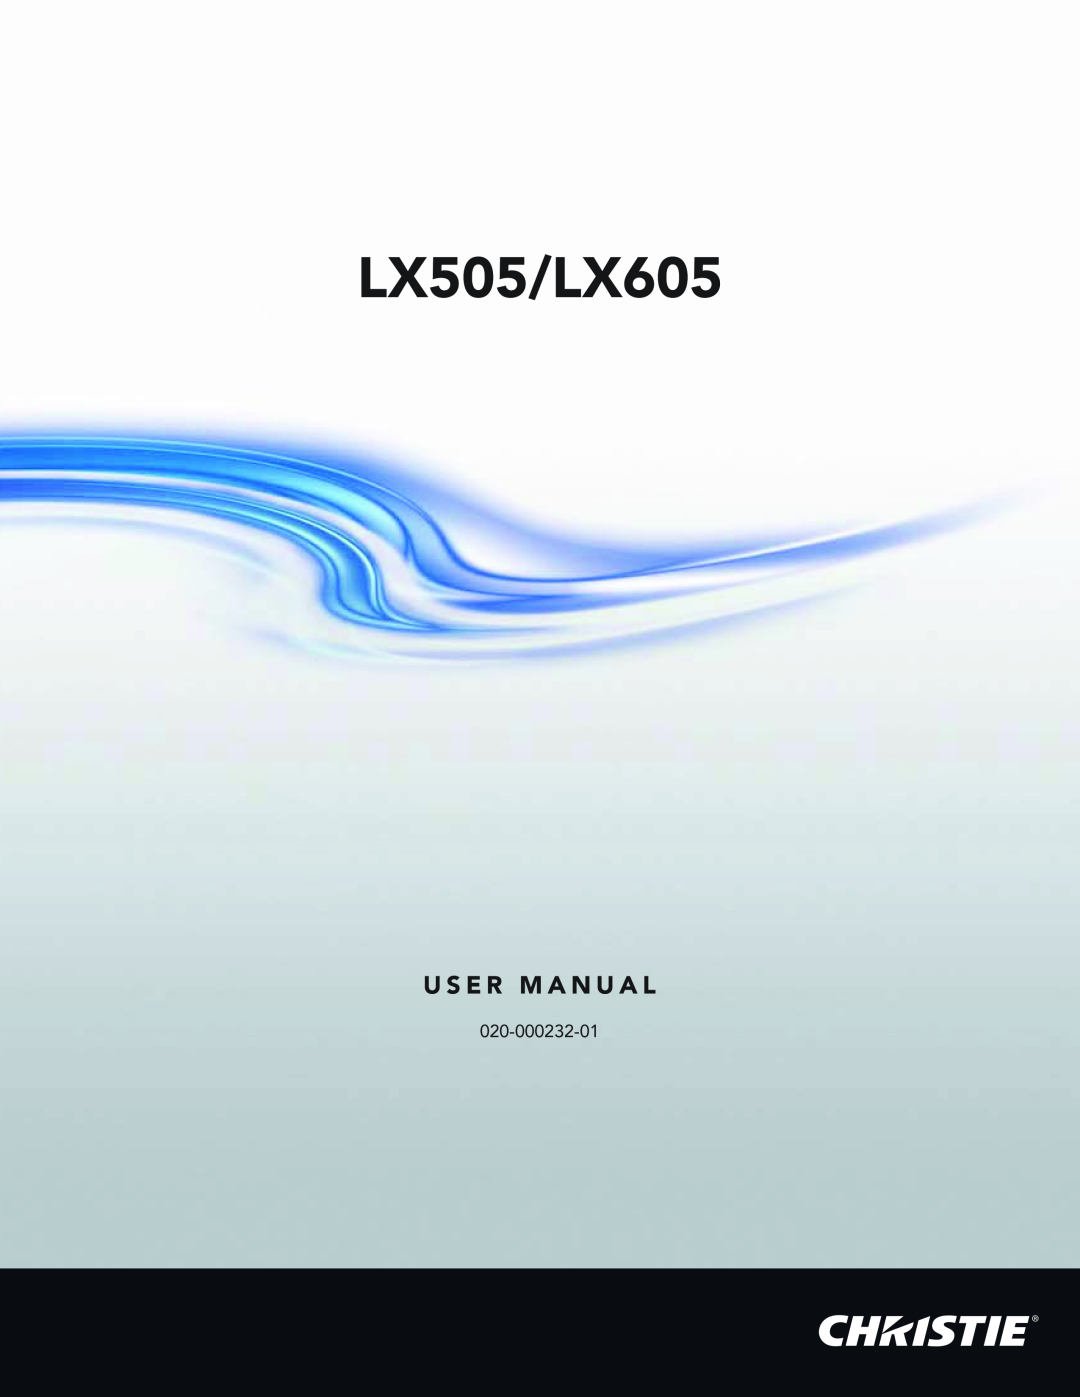 Christie Digital Systems manual LX505/LX605, U S E R M A N U A L 